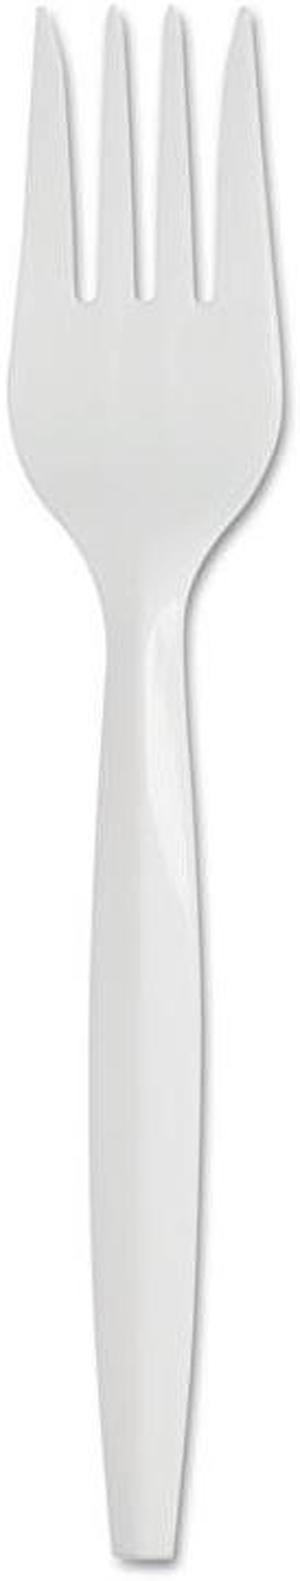 SmartStock Plastic Cutlery Refill 5.8in Fork White 40/Pack 24 Packs/Case